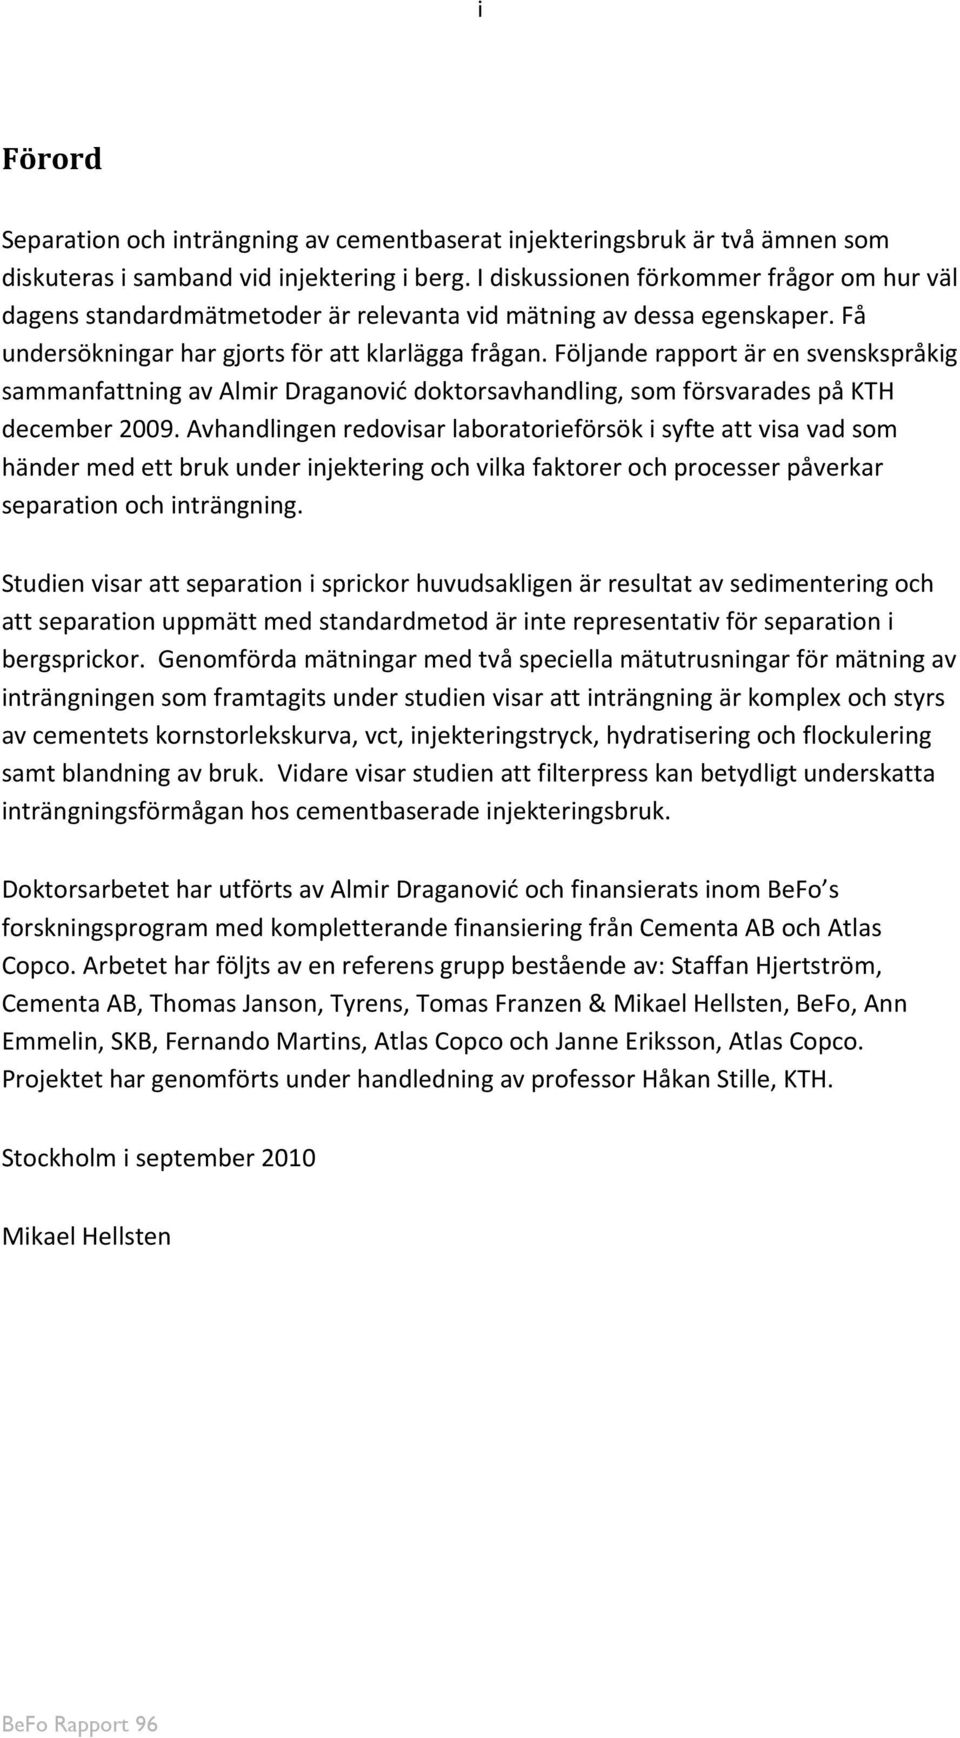 Följande rapport är en svenskspråkig sammanfattning av Almir Draganović doktorsavhandling, som försvarades på KTH december 2009.